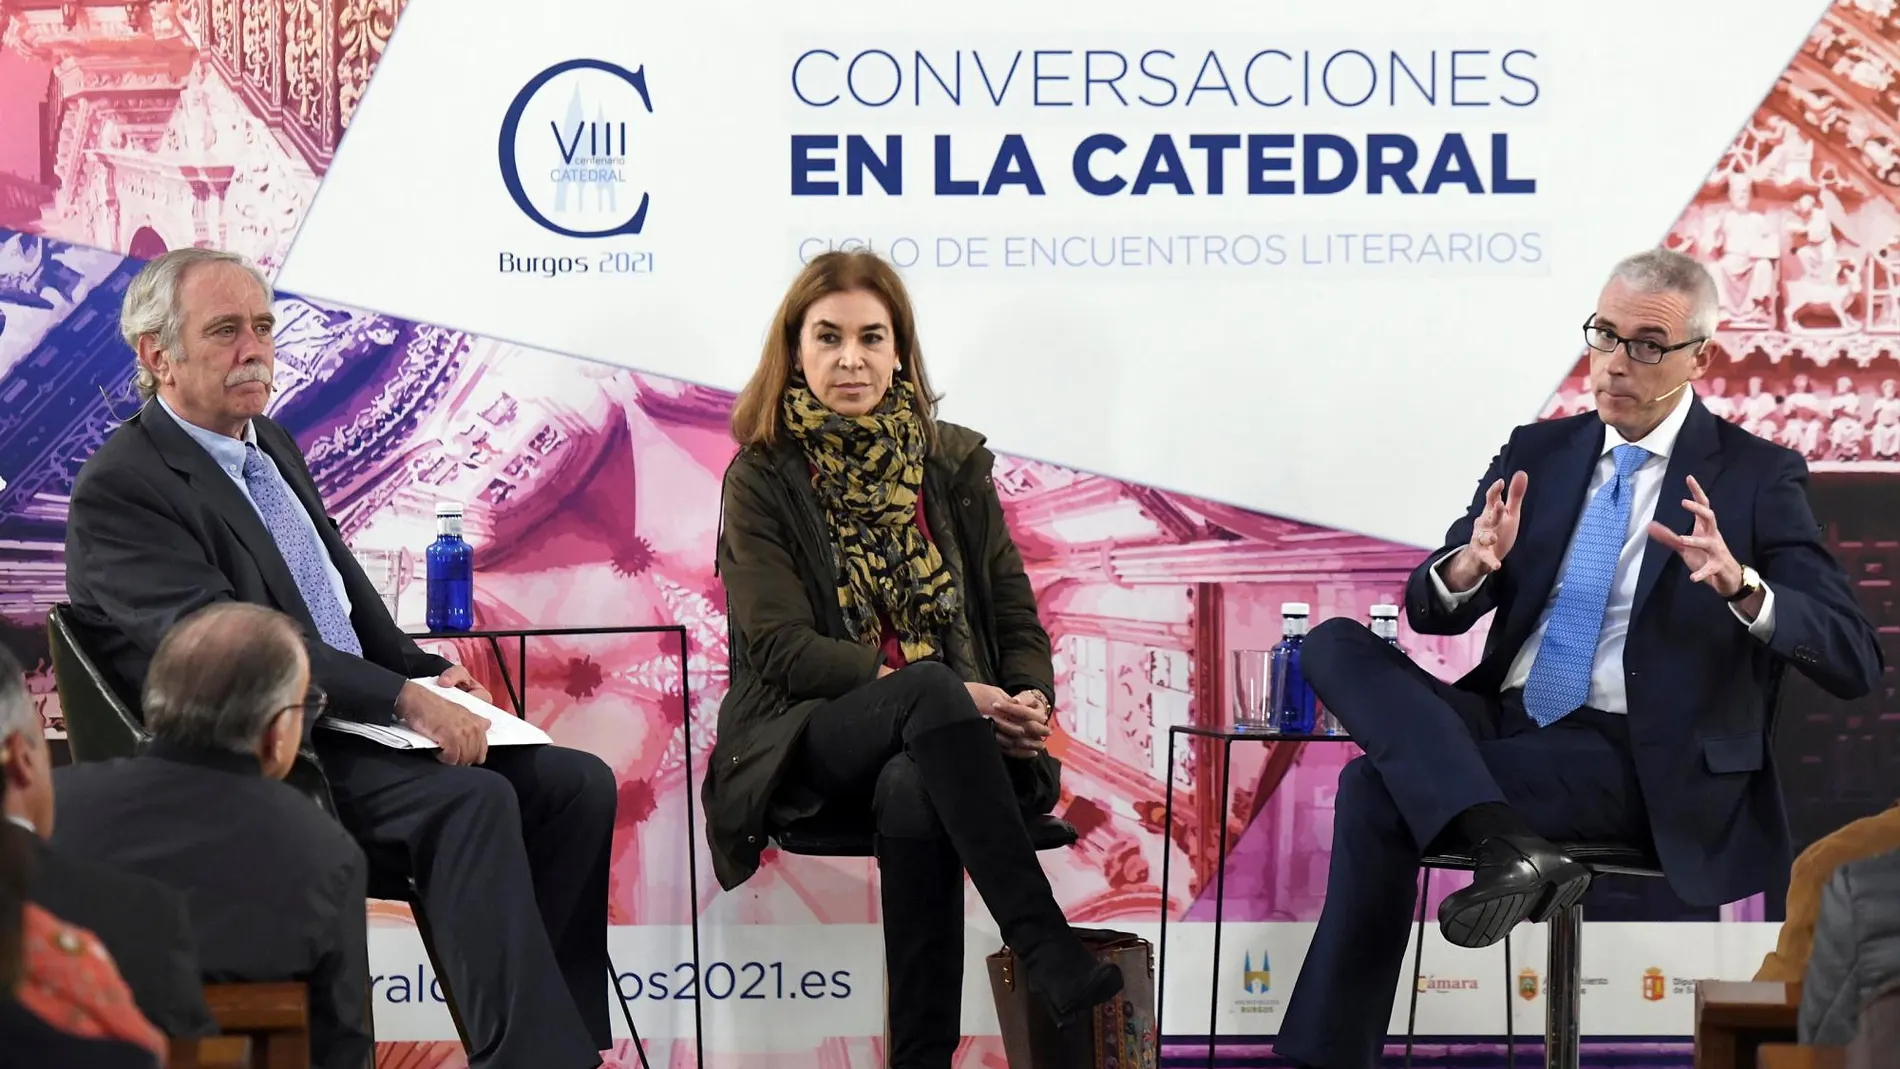 Los escritores Carmen Posadas (C) y Emilio Lara (D), participan en una charla sobre el castellano en España y español en el mundo presentada por el periodista y escritor Antonio Pérez Henares (I)